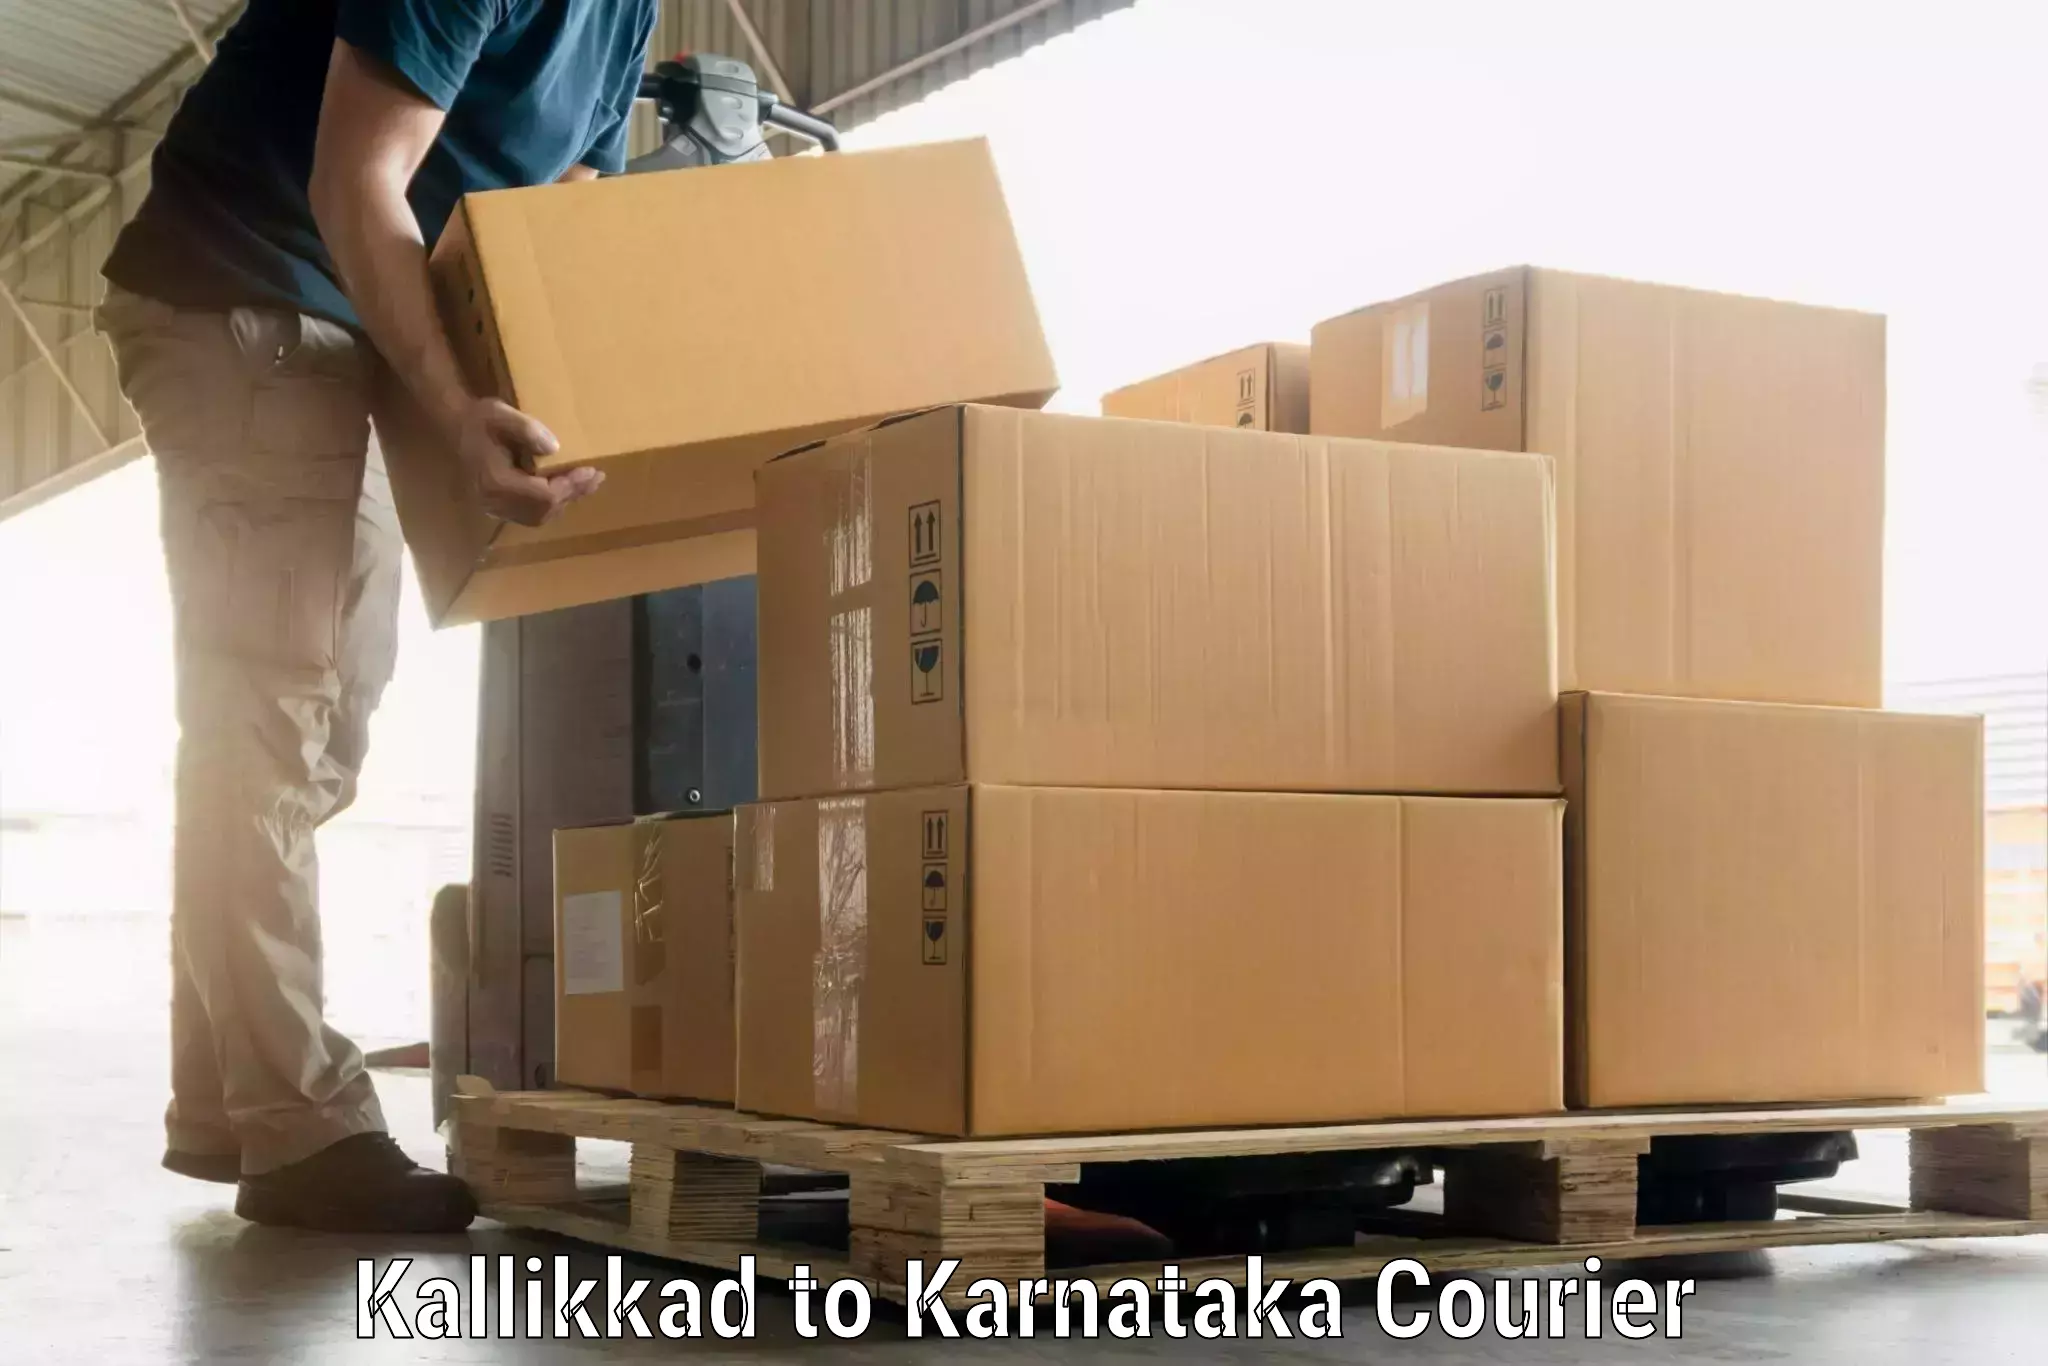 Baggage courier guide Kallikkad to Karwar